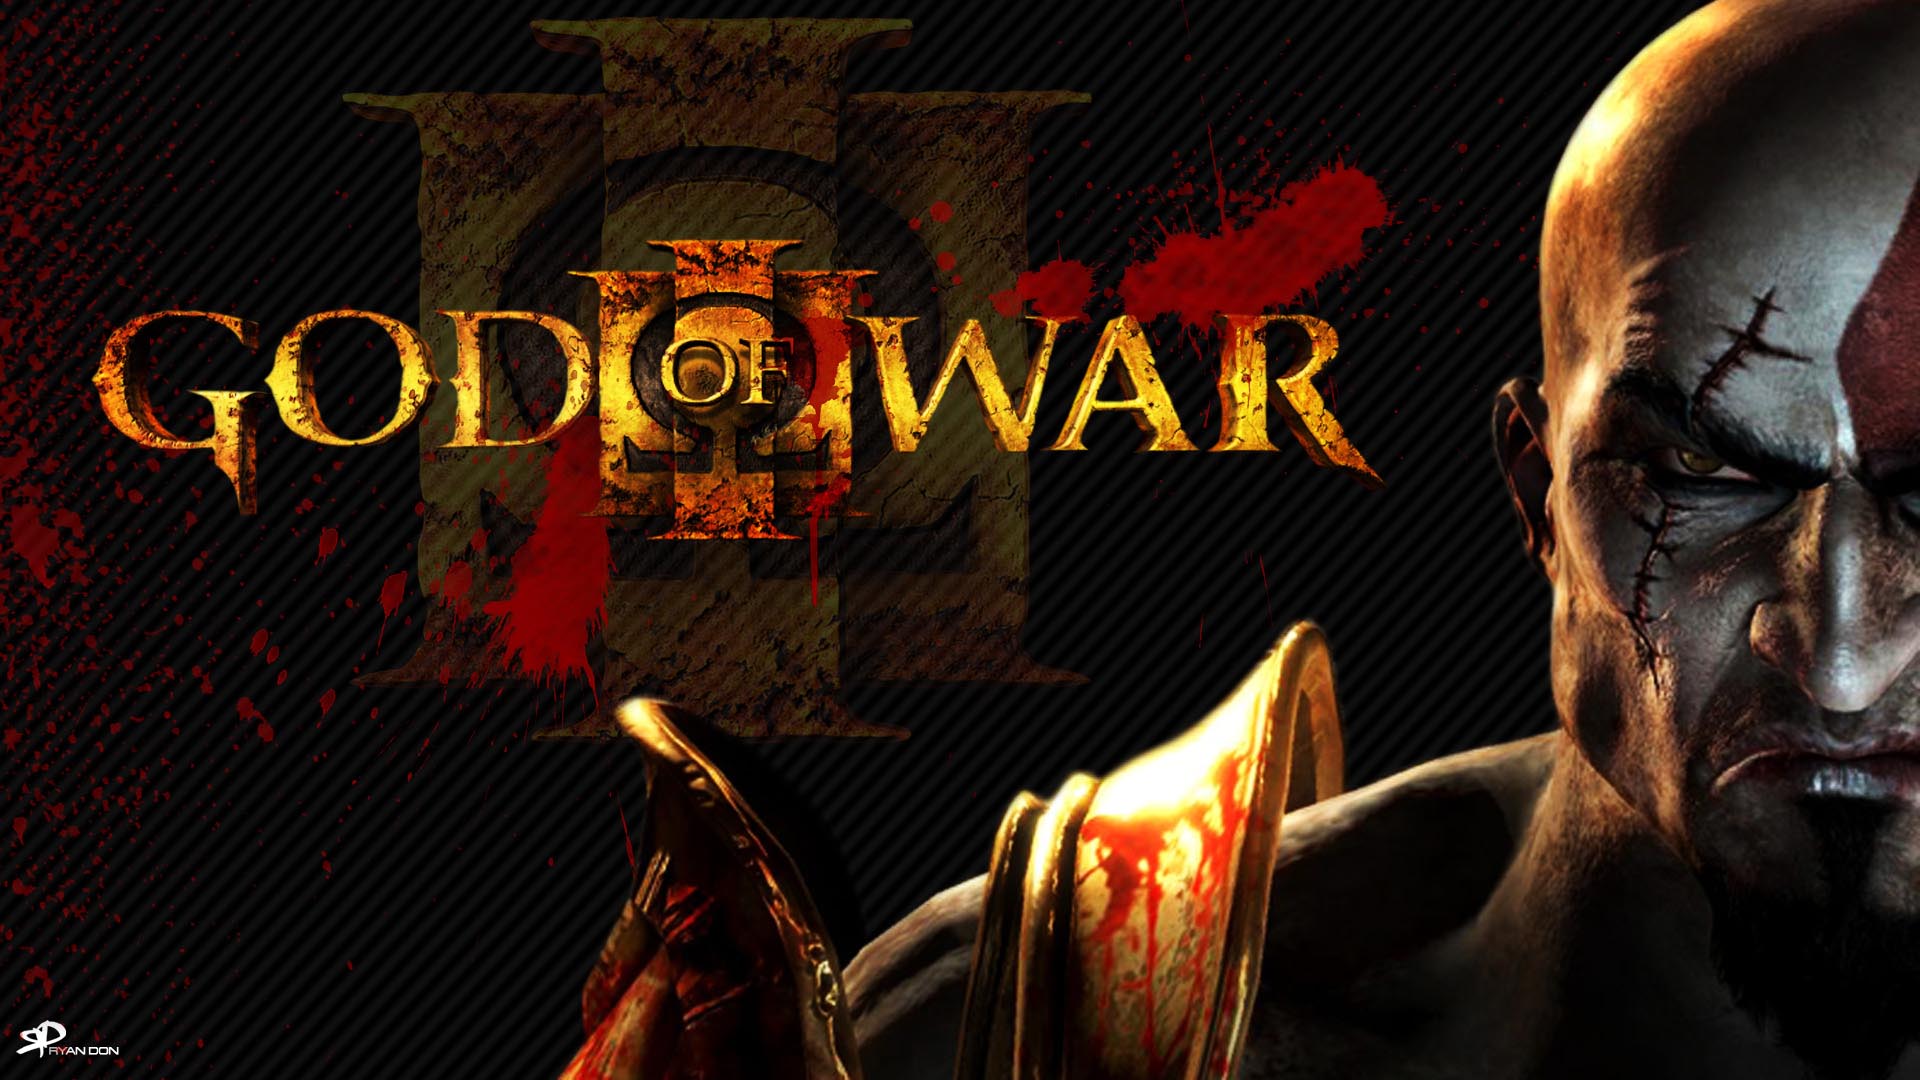 Download background god of war iii, god of war, video game